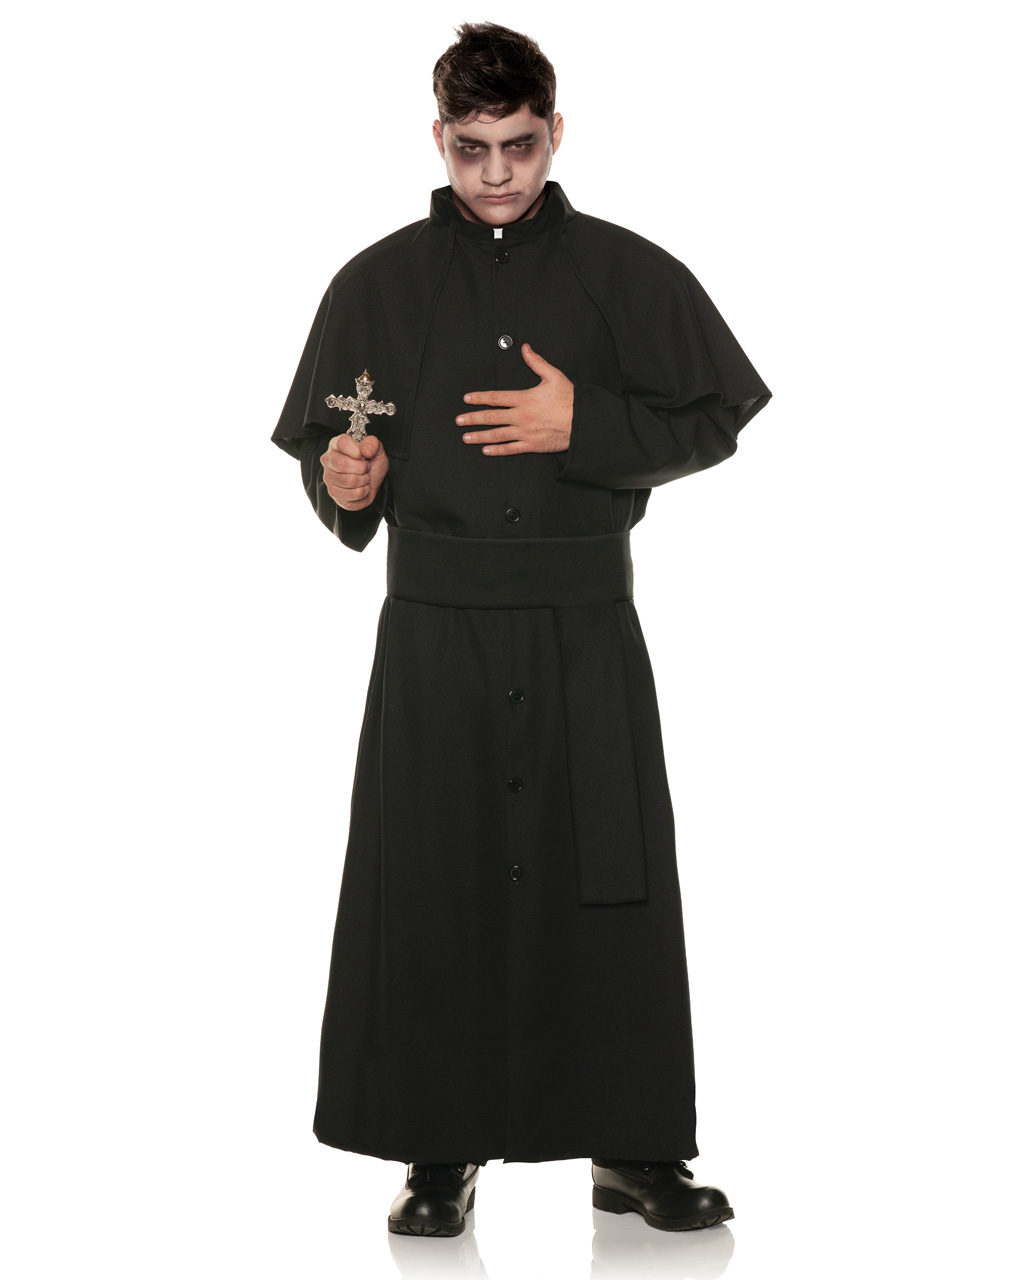 Exorcism Priest Costume